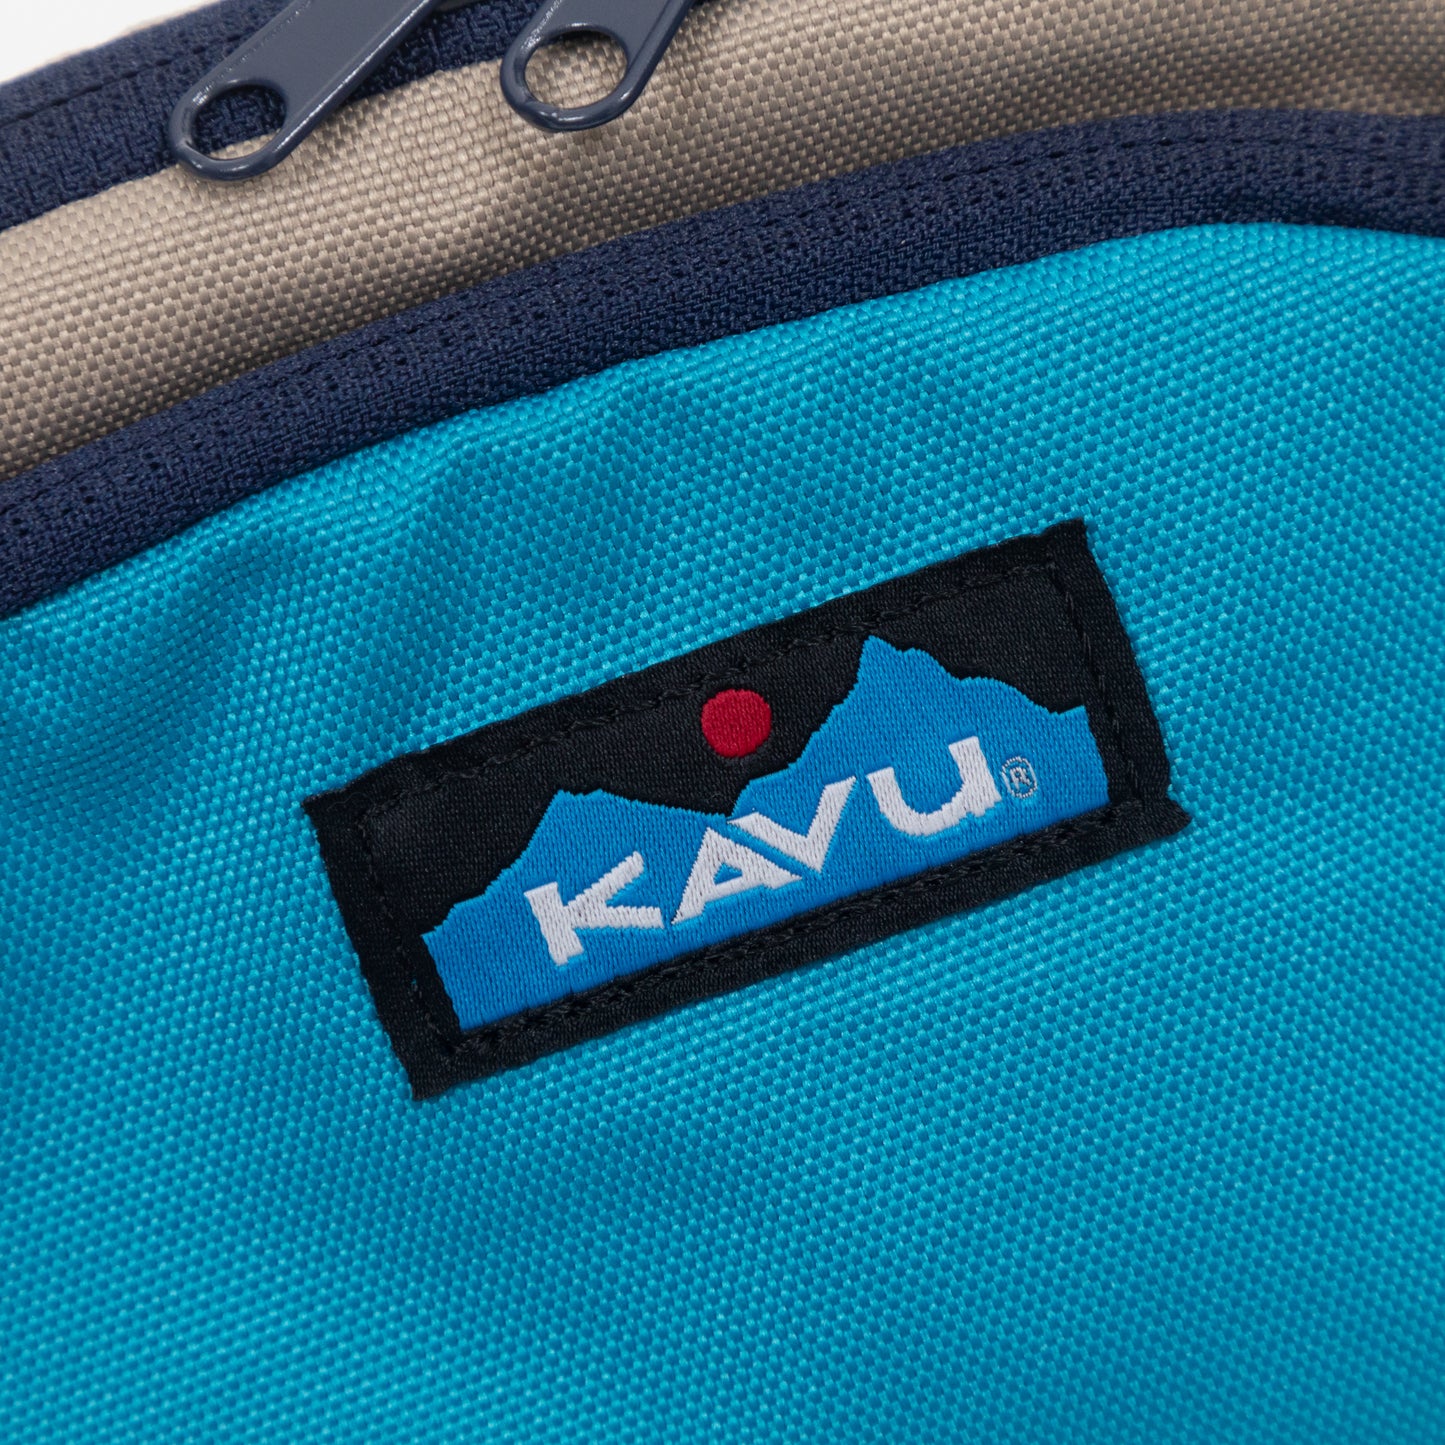 KAVU Spectator Bum Bag in BLUE & ORANGE